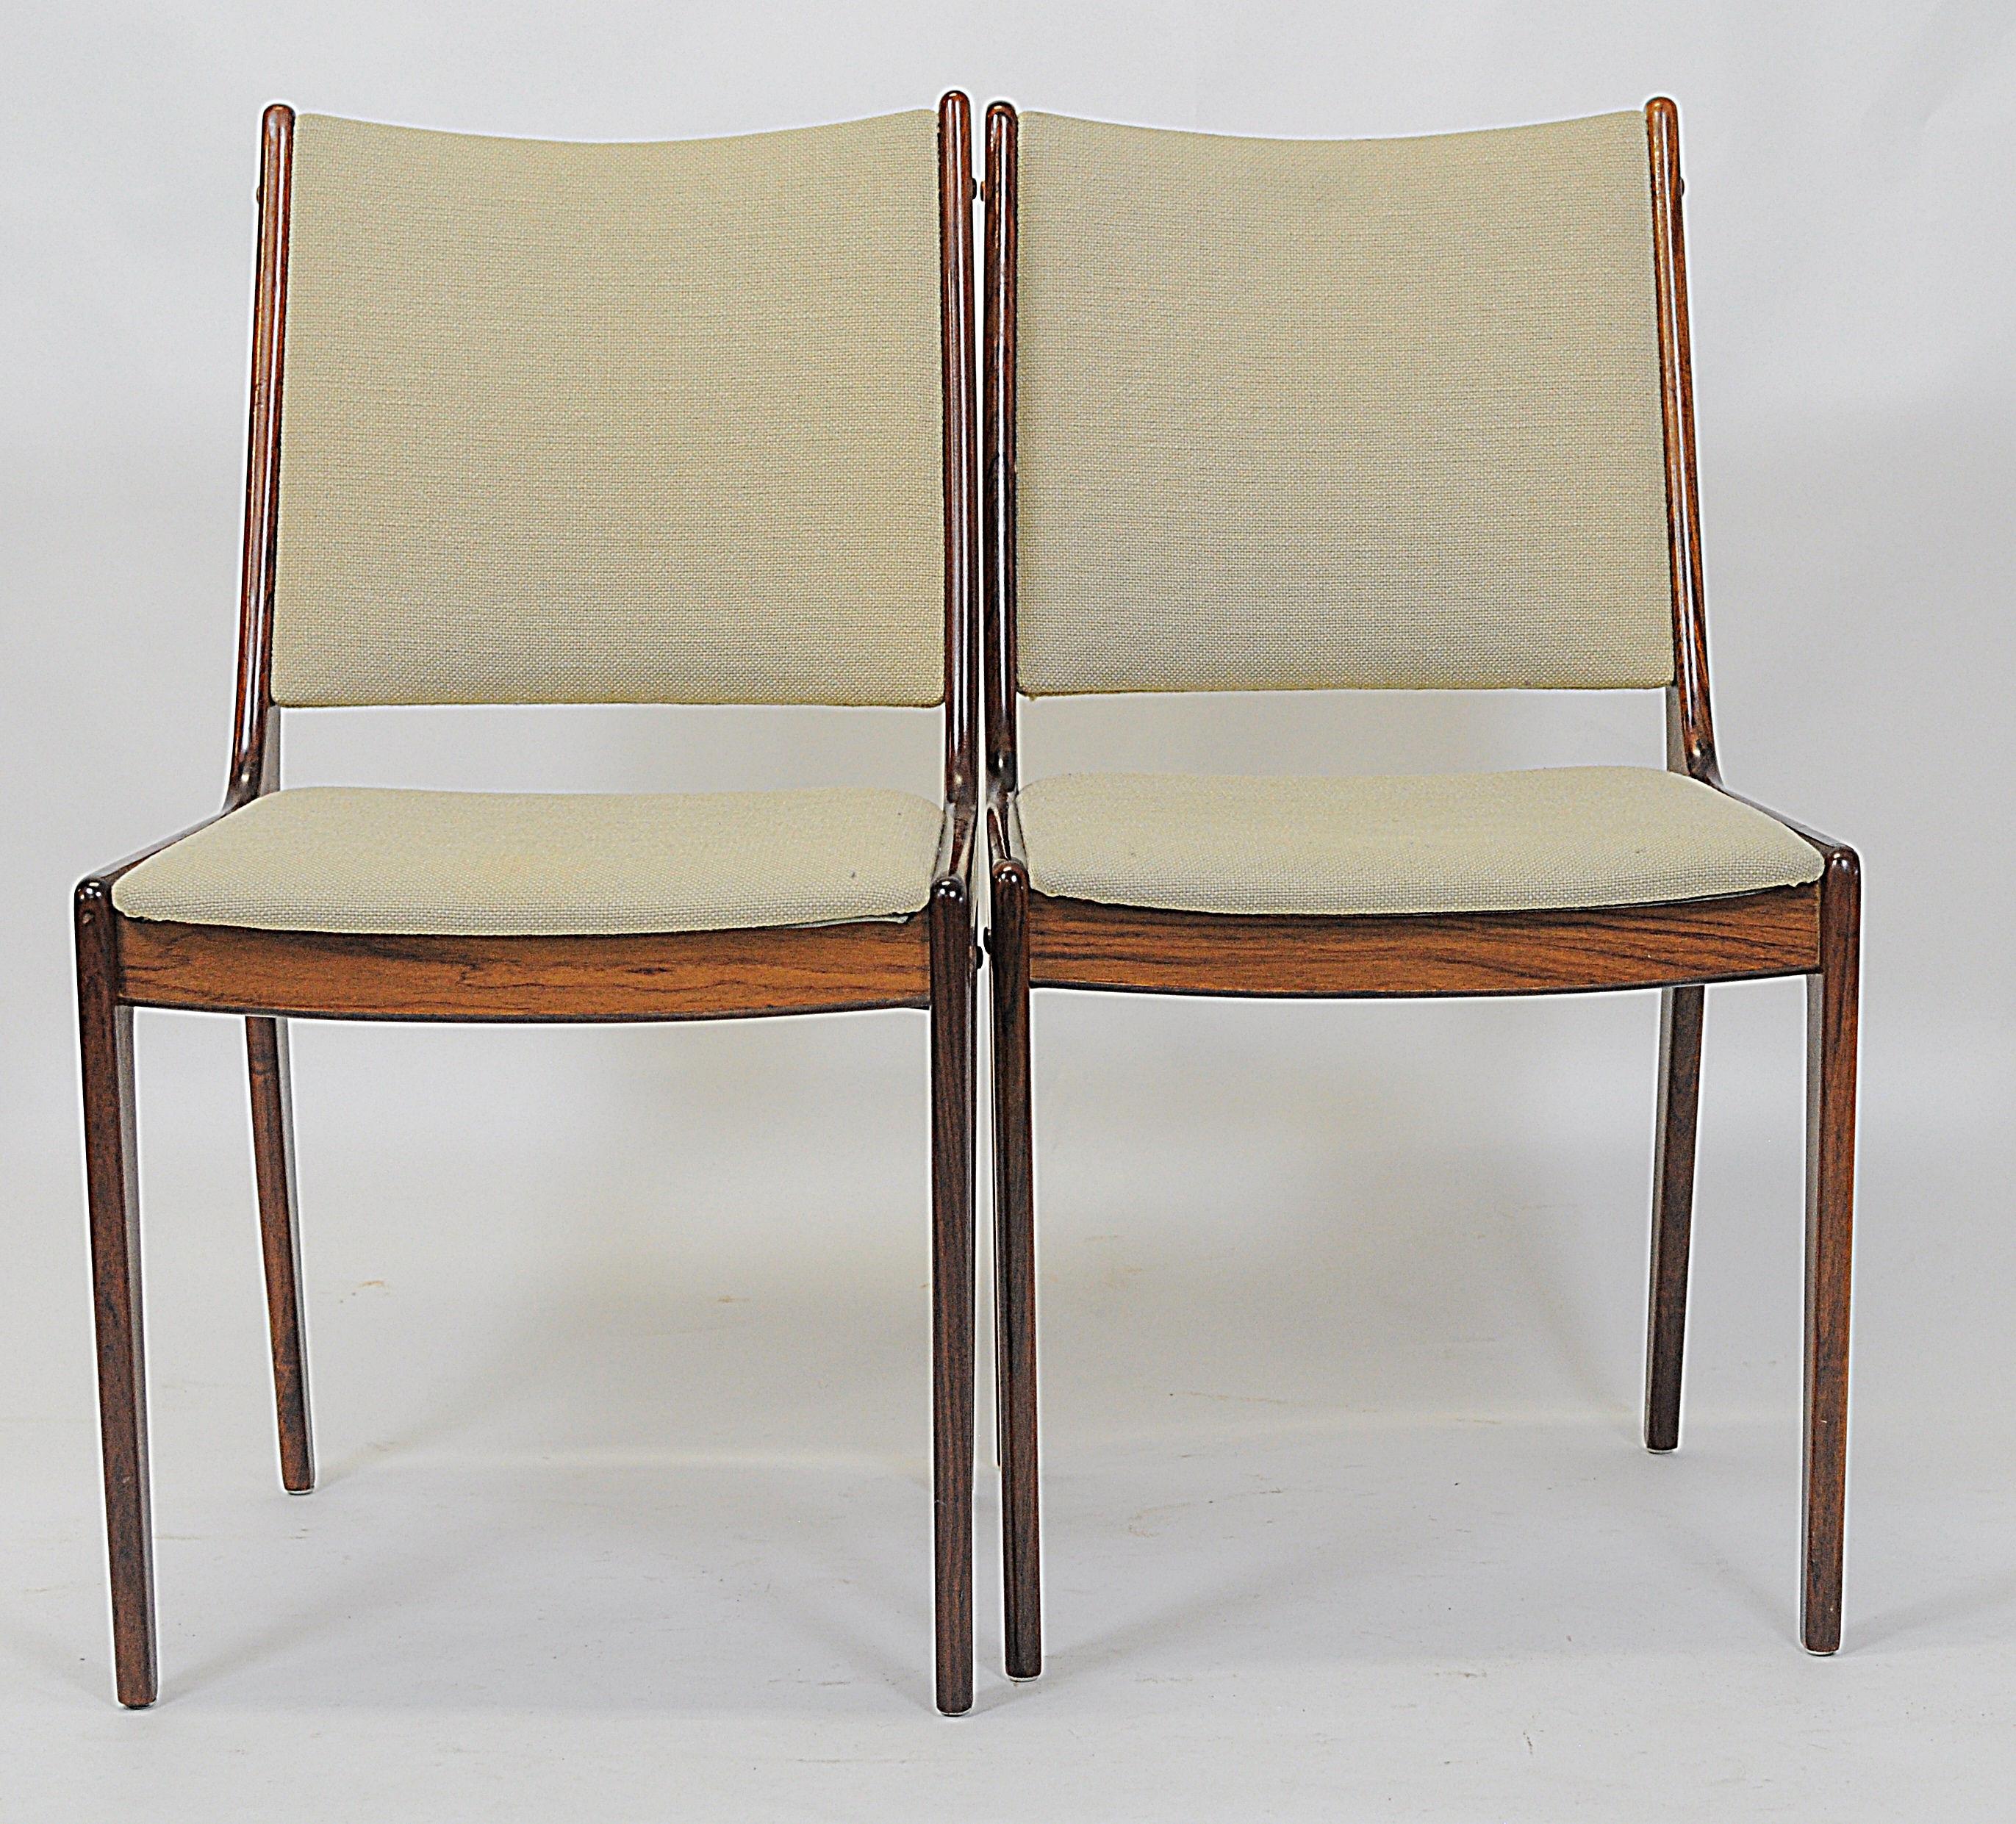 Satz von 8 Johannes Andersen Esszimmerstühlen aus Palisander aus den 1960er Jahren von Uldum Møbler, Dänemark.

Die Esszimmerstühle zeichnen sich durch ein schlichtes, aber elegantes Design aus, das in den meisten Häusern eine gute Figur macht.